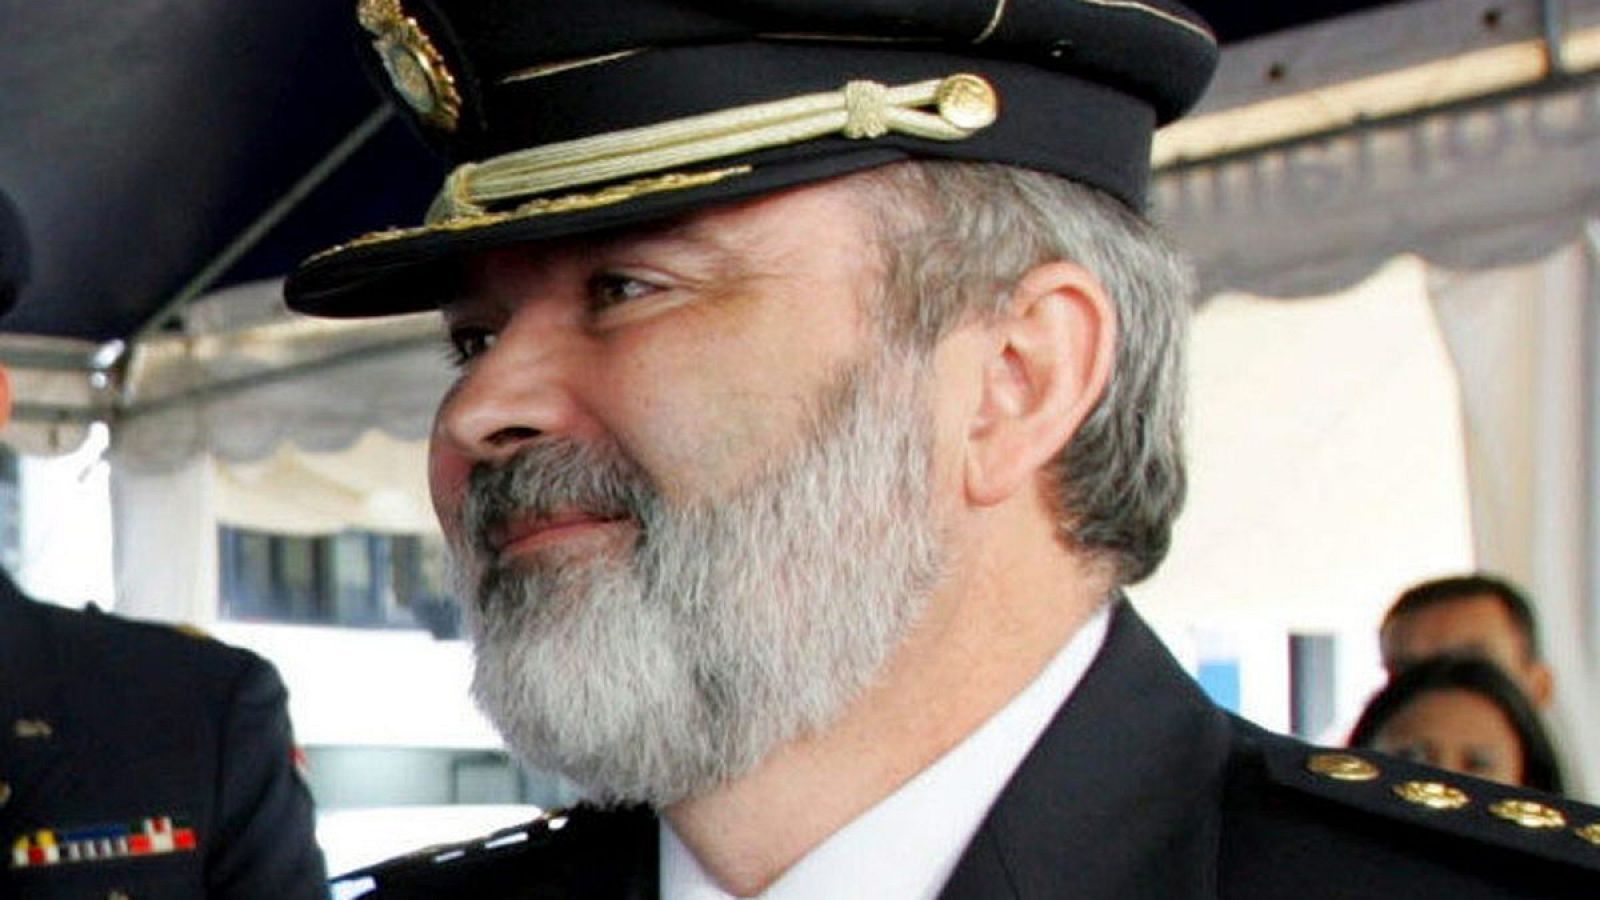 El comisario Jesús Figón, en una imagen de 2004, cuando era agregado policial de España en Costa Rica.